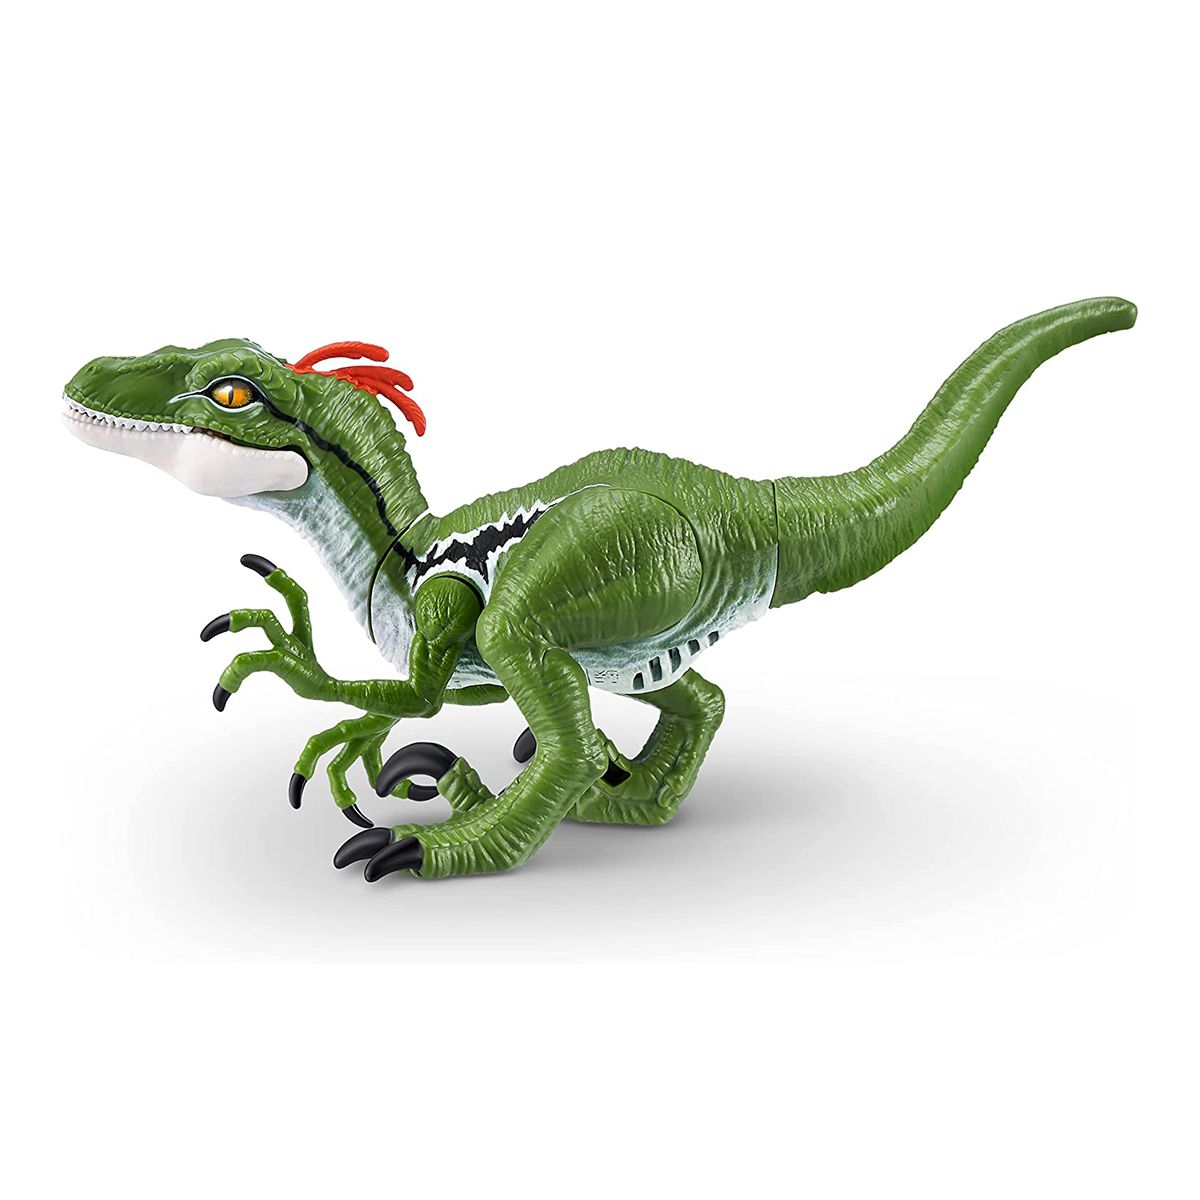 Интерактивная игрушка "Dino Action: Раптор"